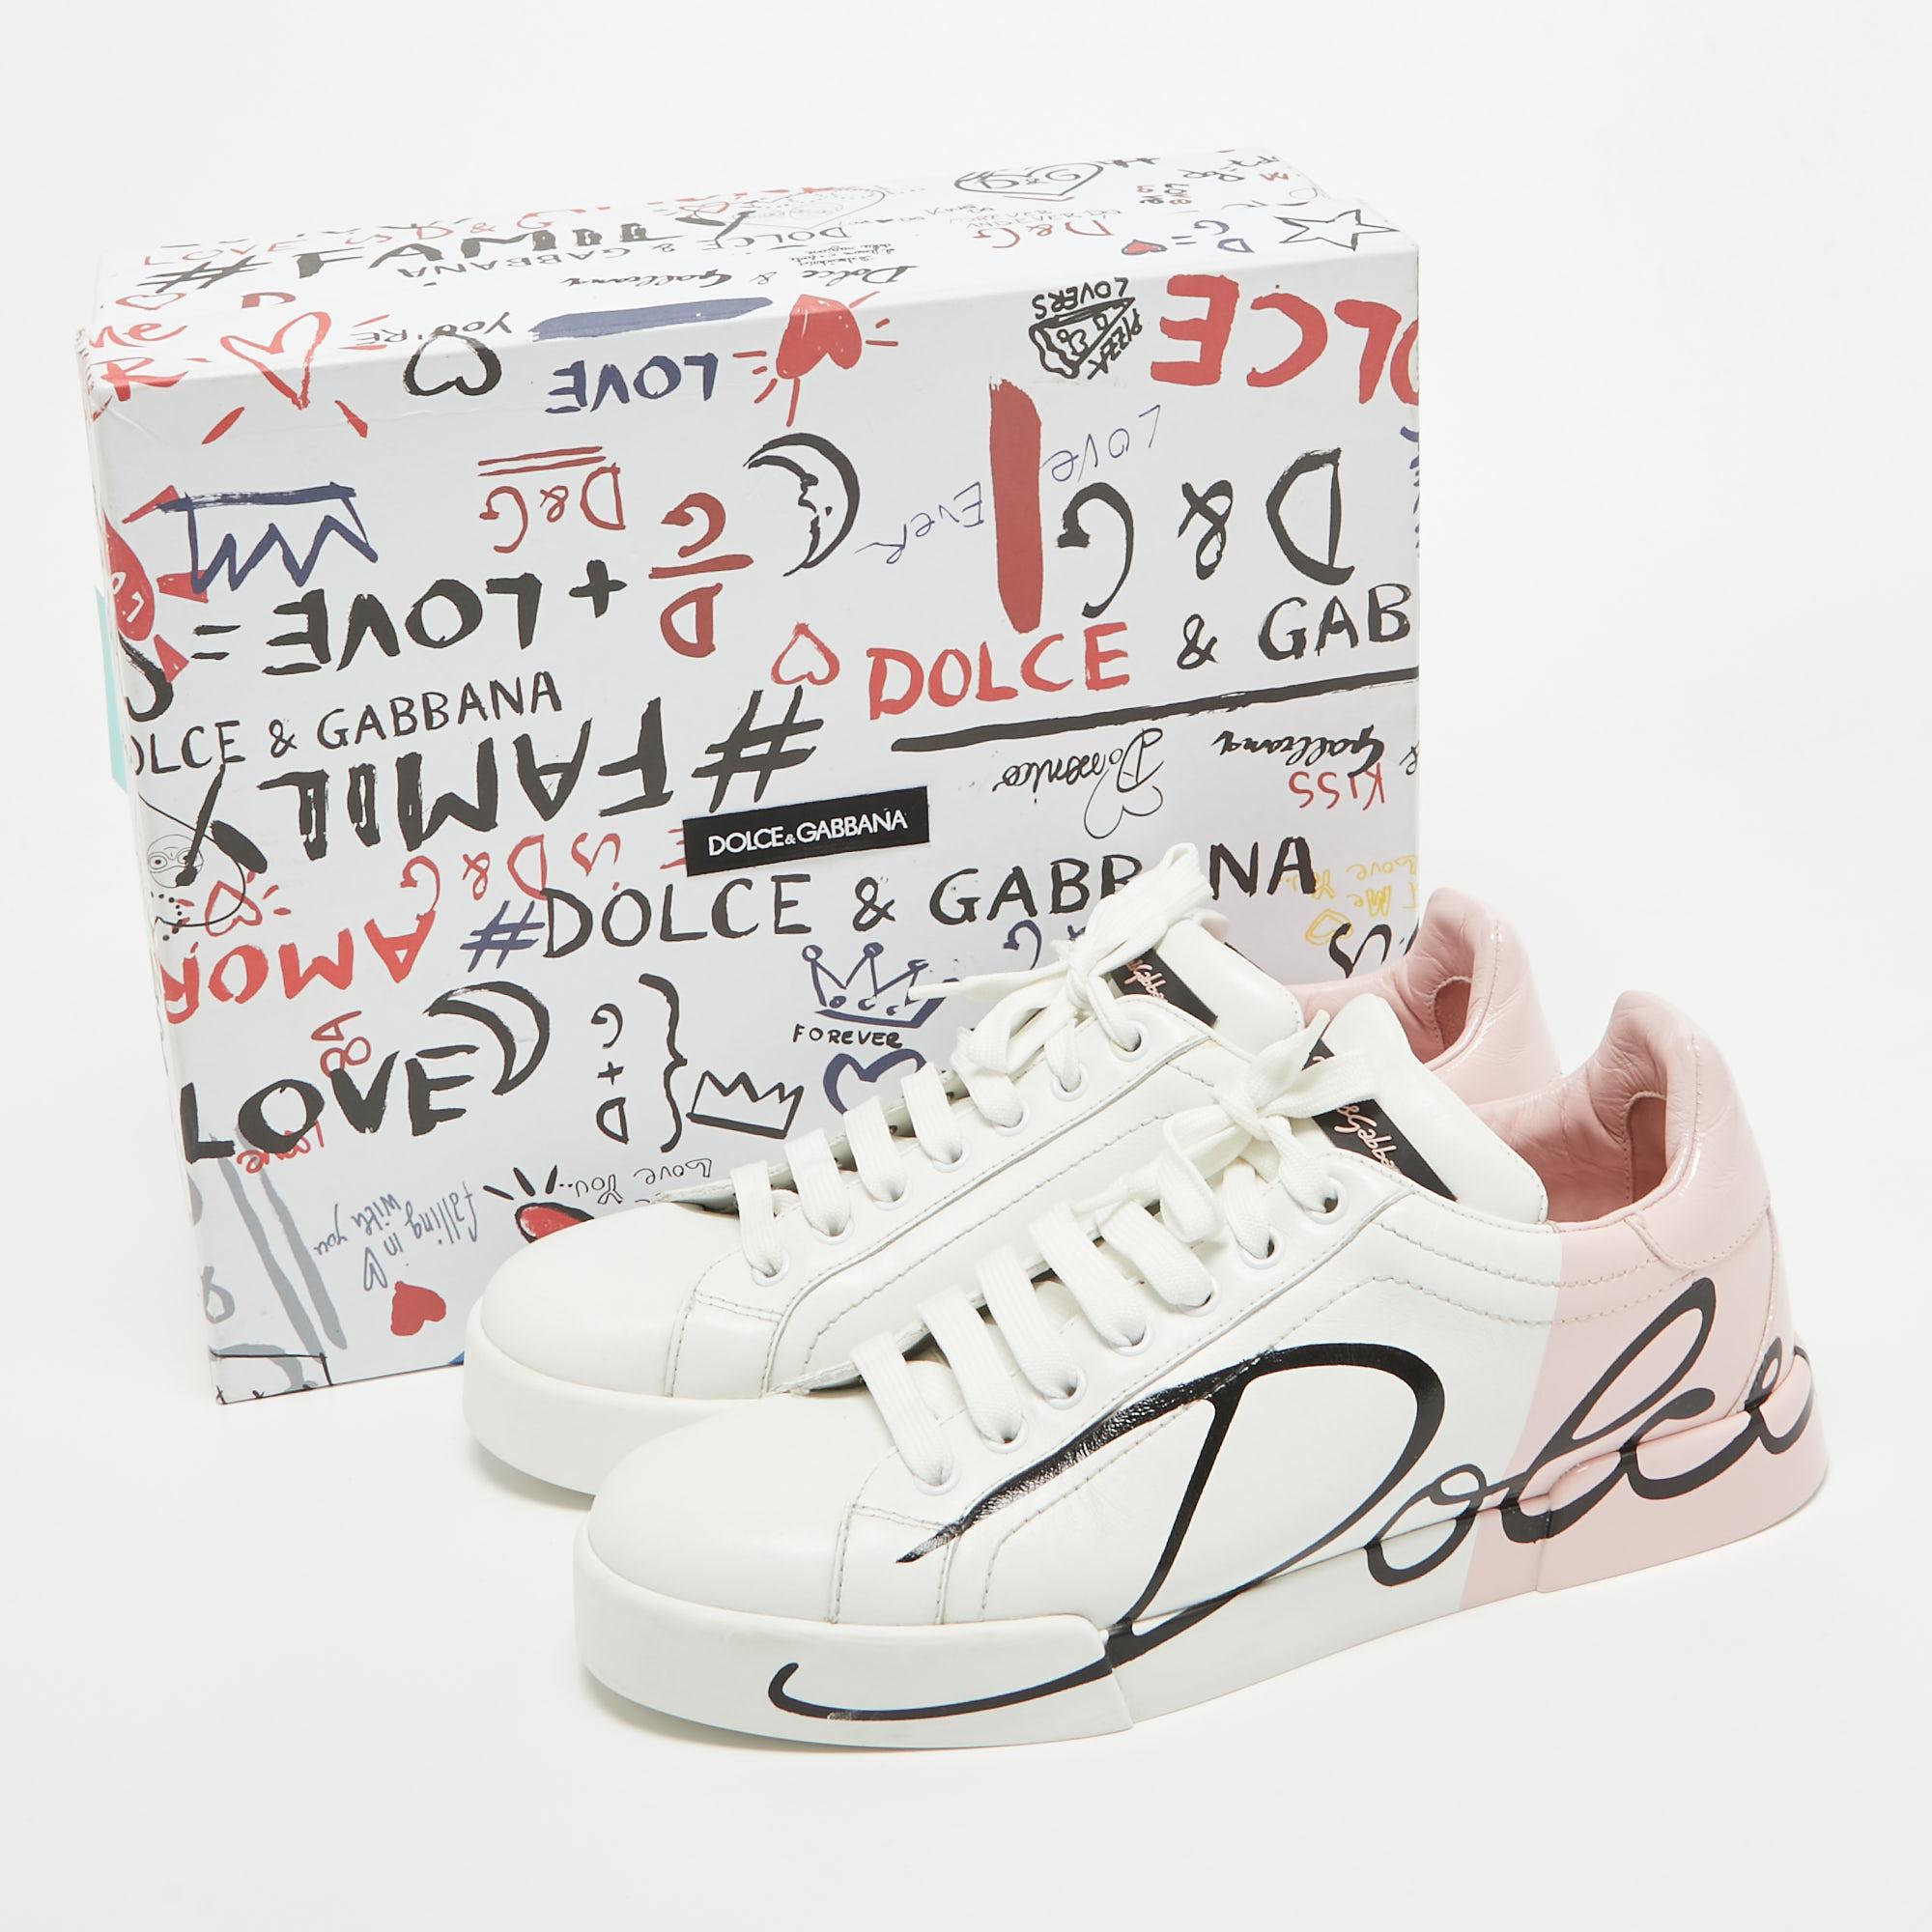 Dolce & Gabbana White/Mauve Leather Portofino Low Top Sneakers Size 39 4